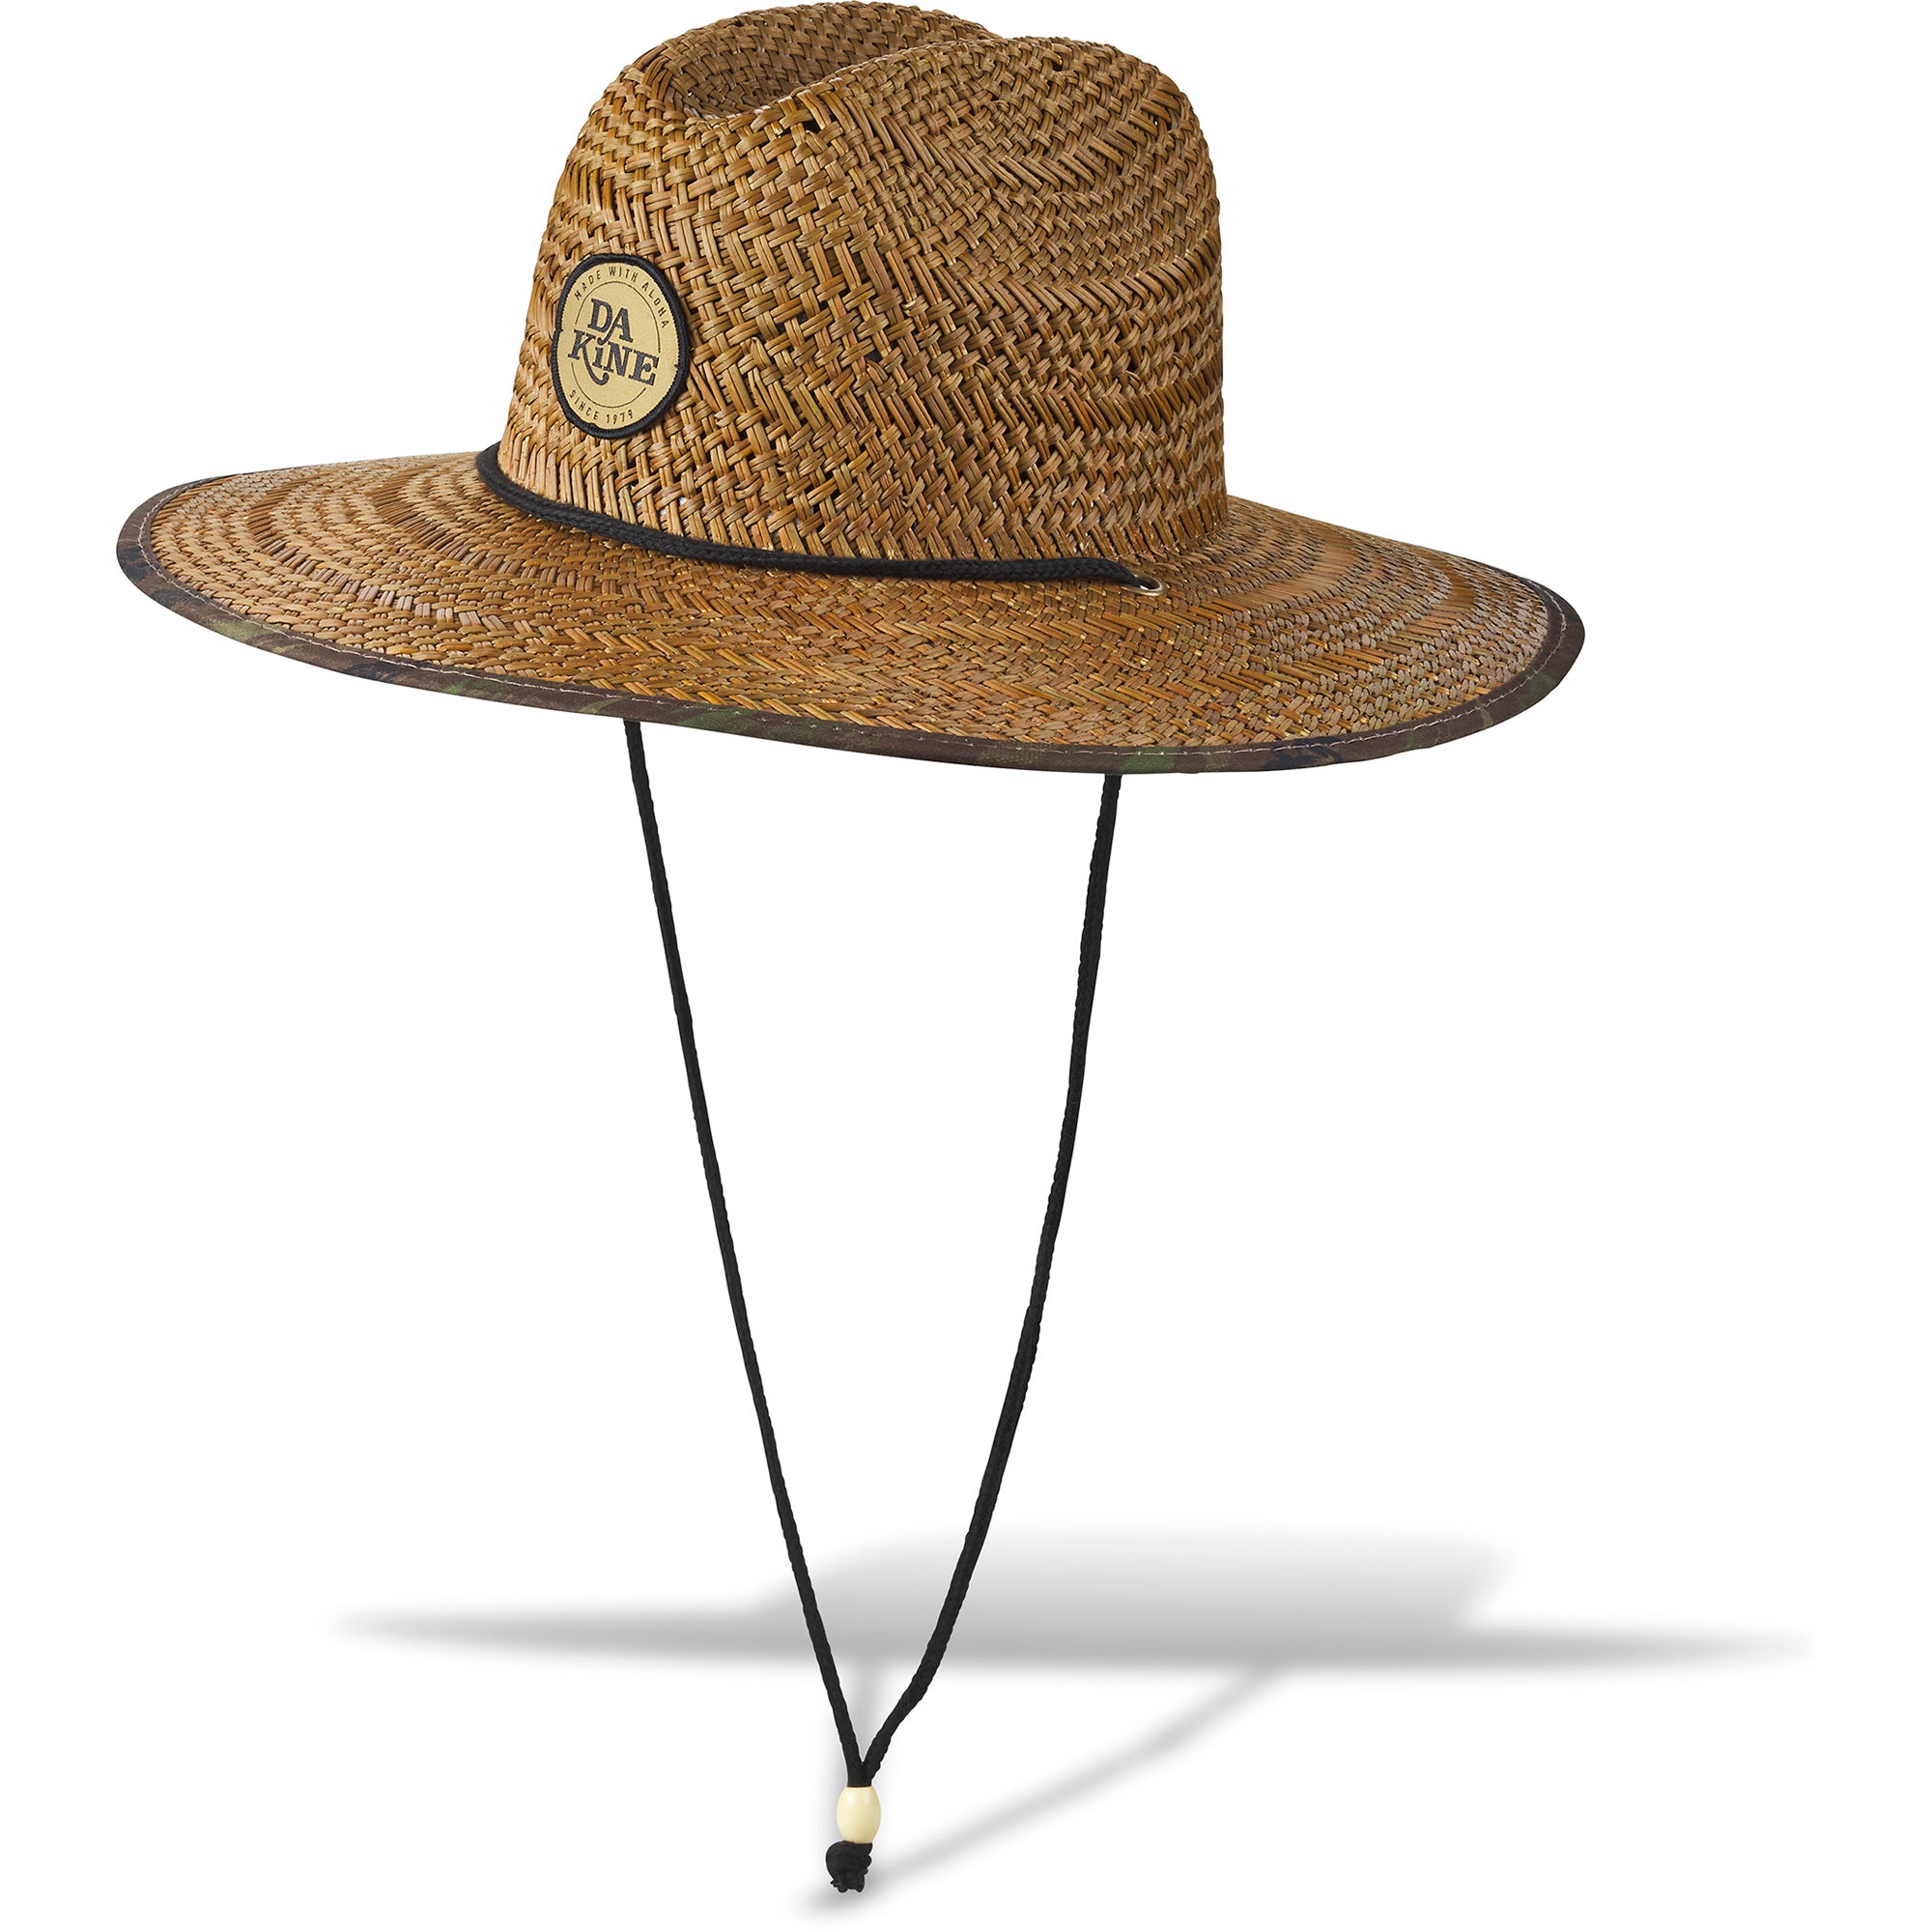 Limited Edition Keys Under Brim Straw Hat